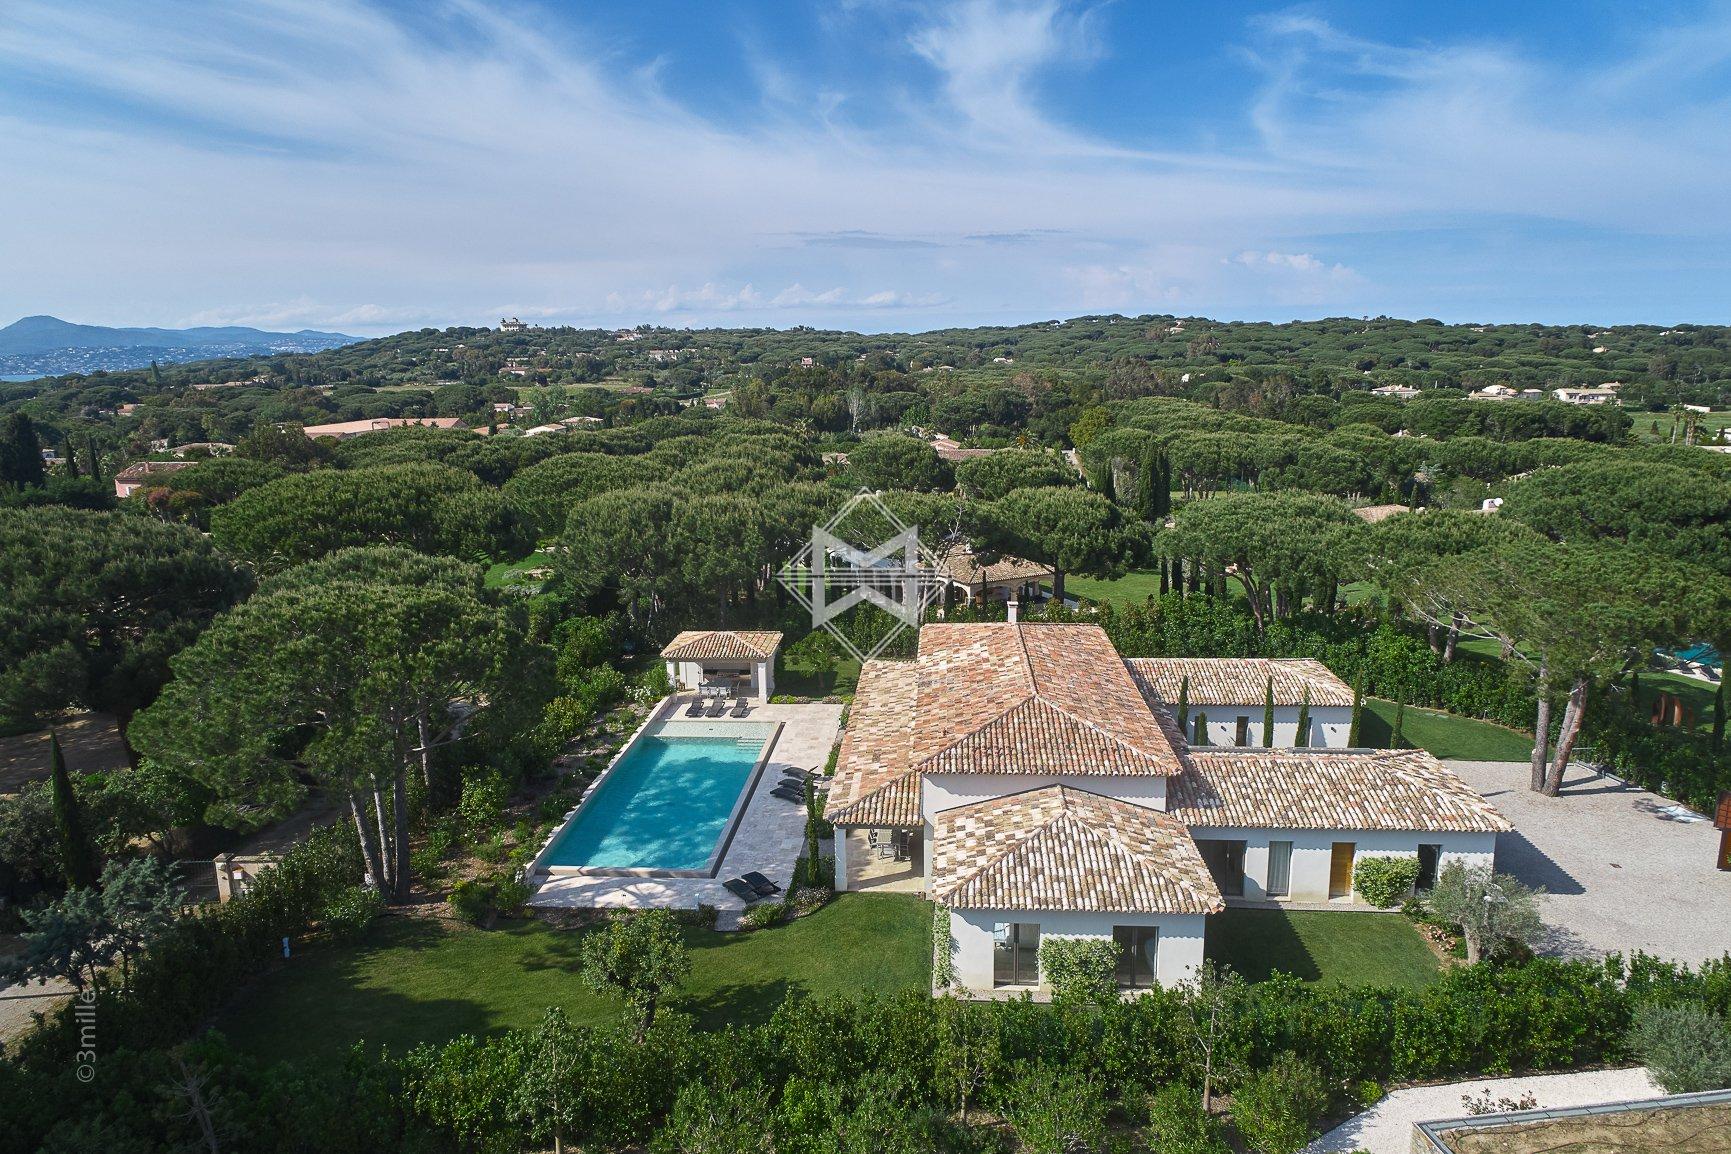 Rent Villa Saint-Tropez - 5 Bedrooms - Brand new villa . Ref 8456L